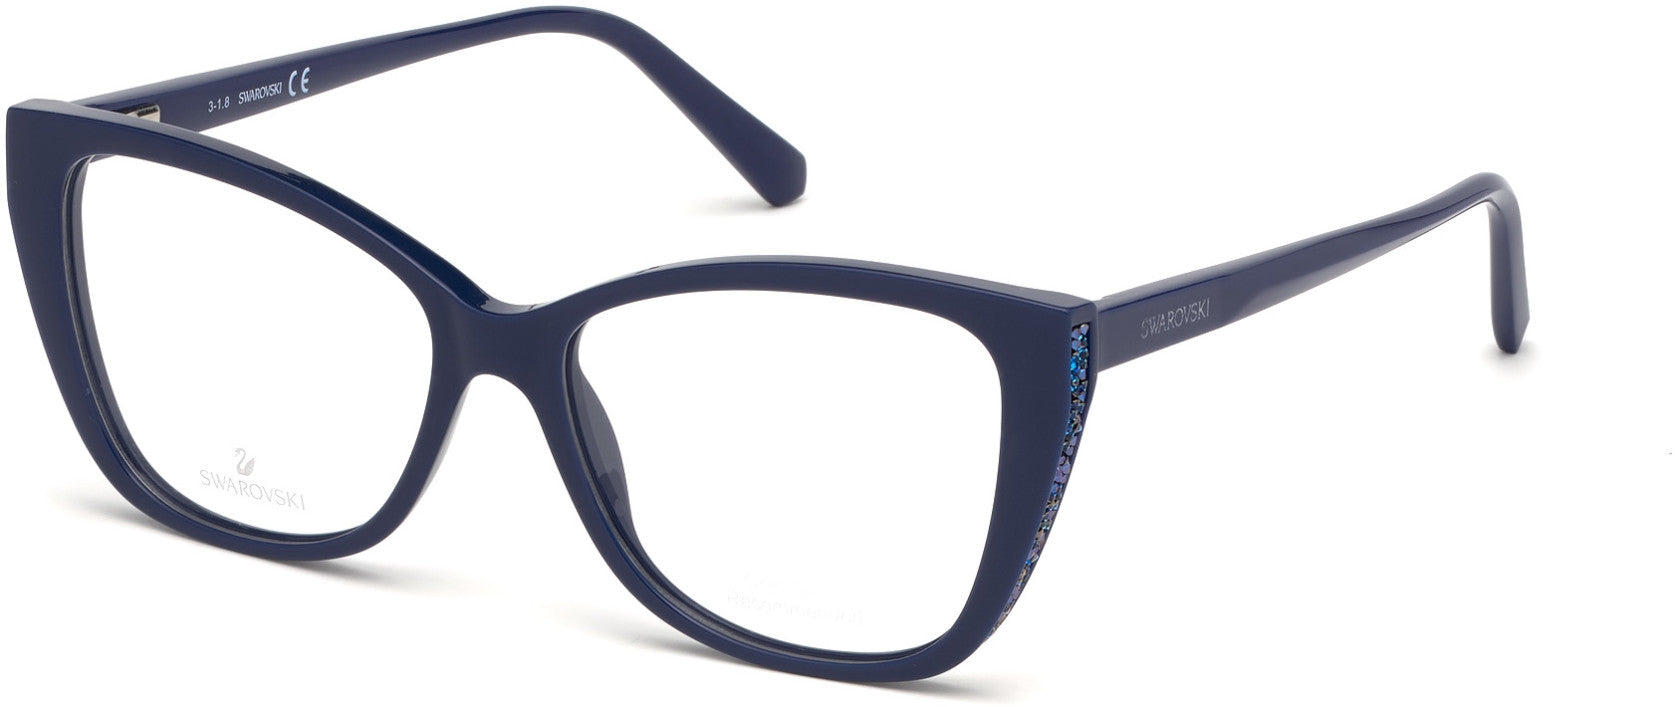 Swarovski SK5290 Square Eyeglasses 090-090 - Shiny Blue